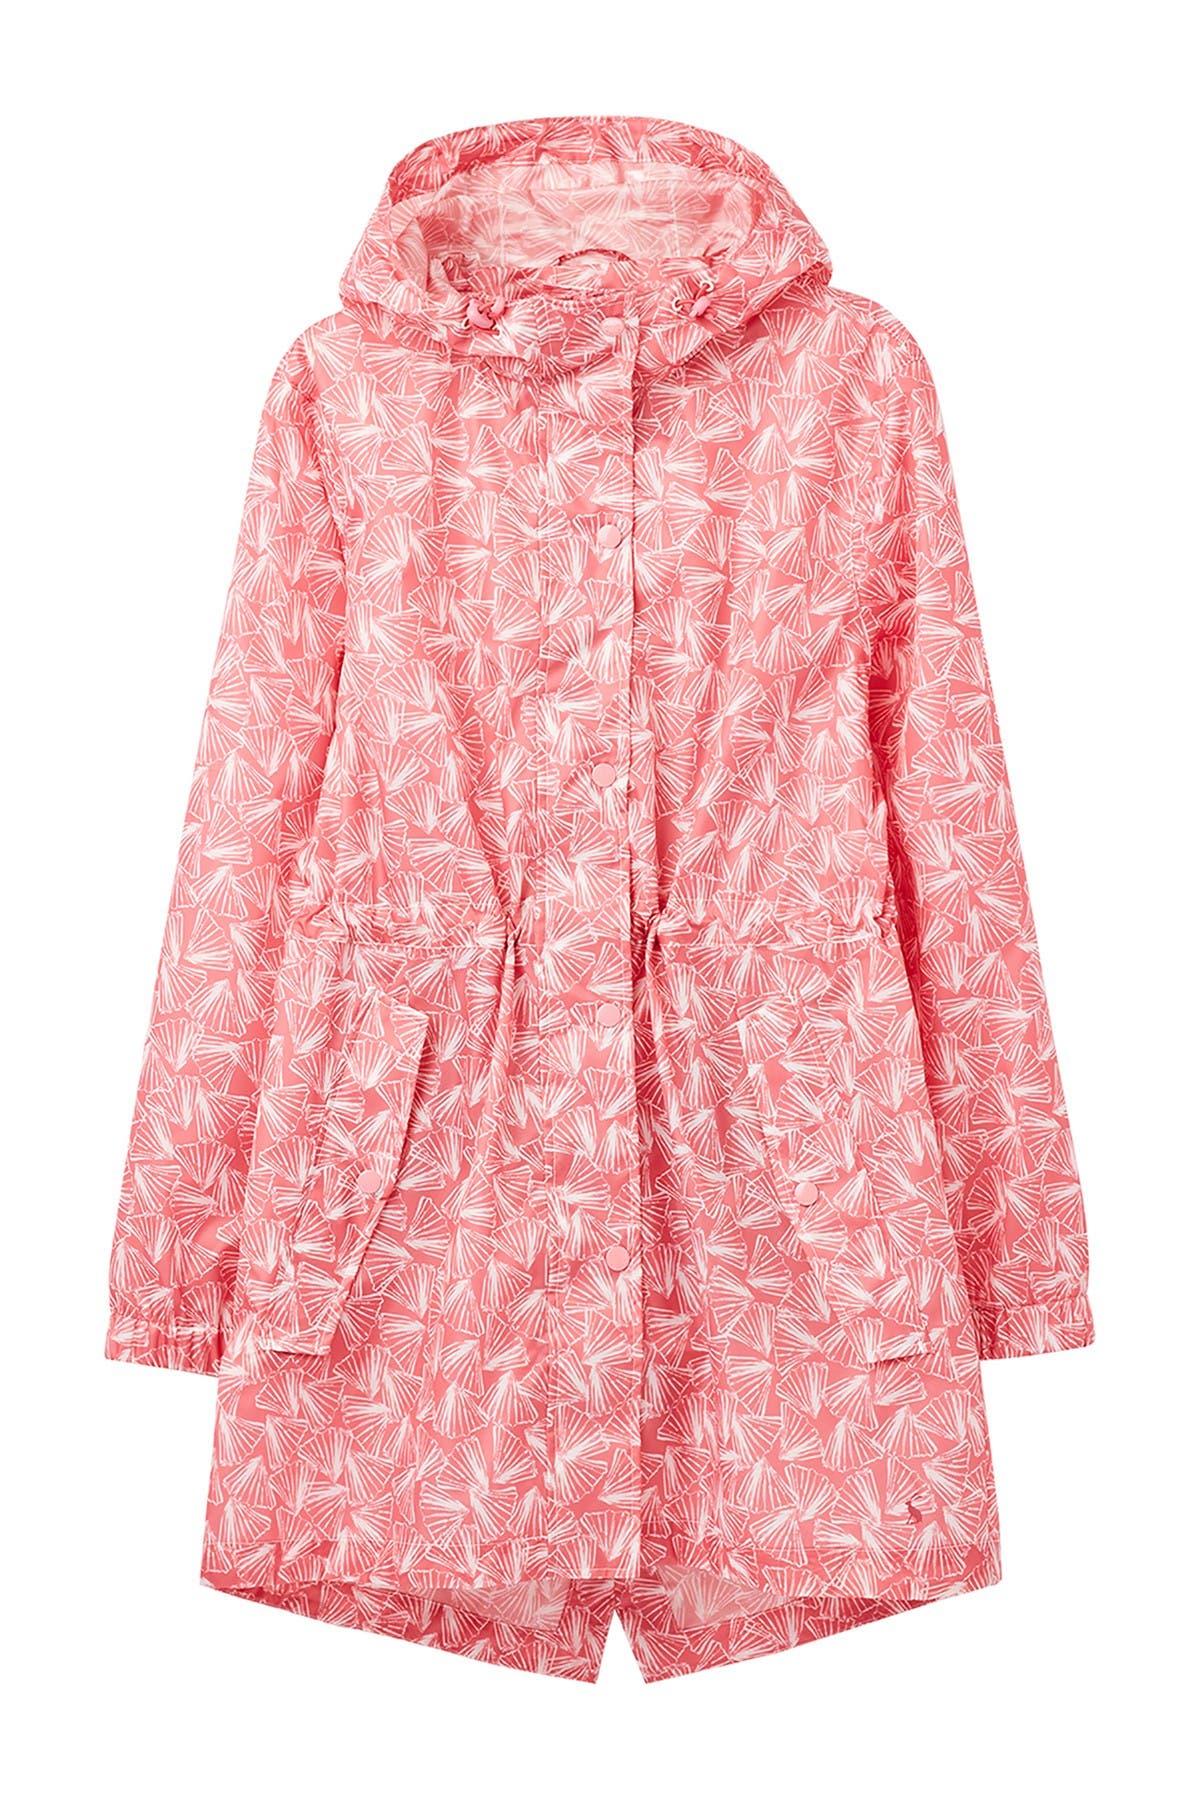 Joules Packable Waterproof Rain Jacket In Pinkshells